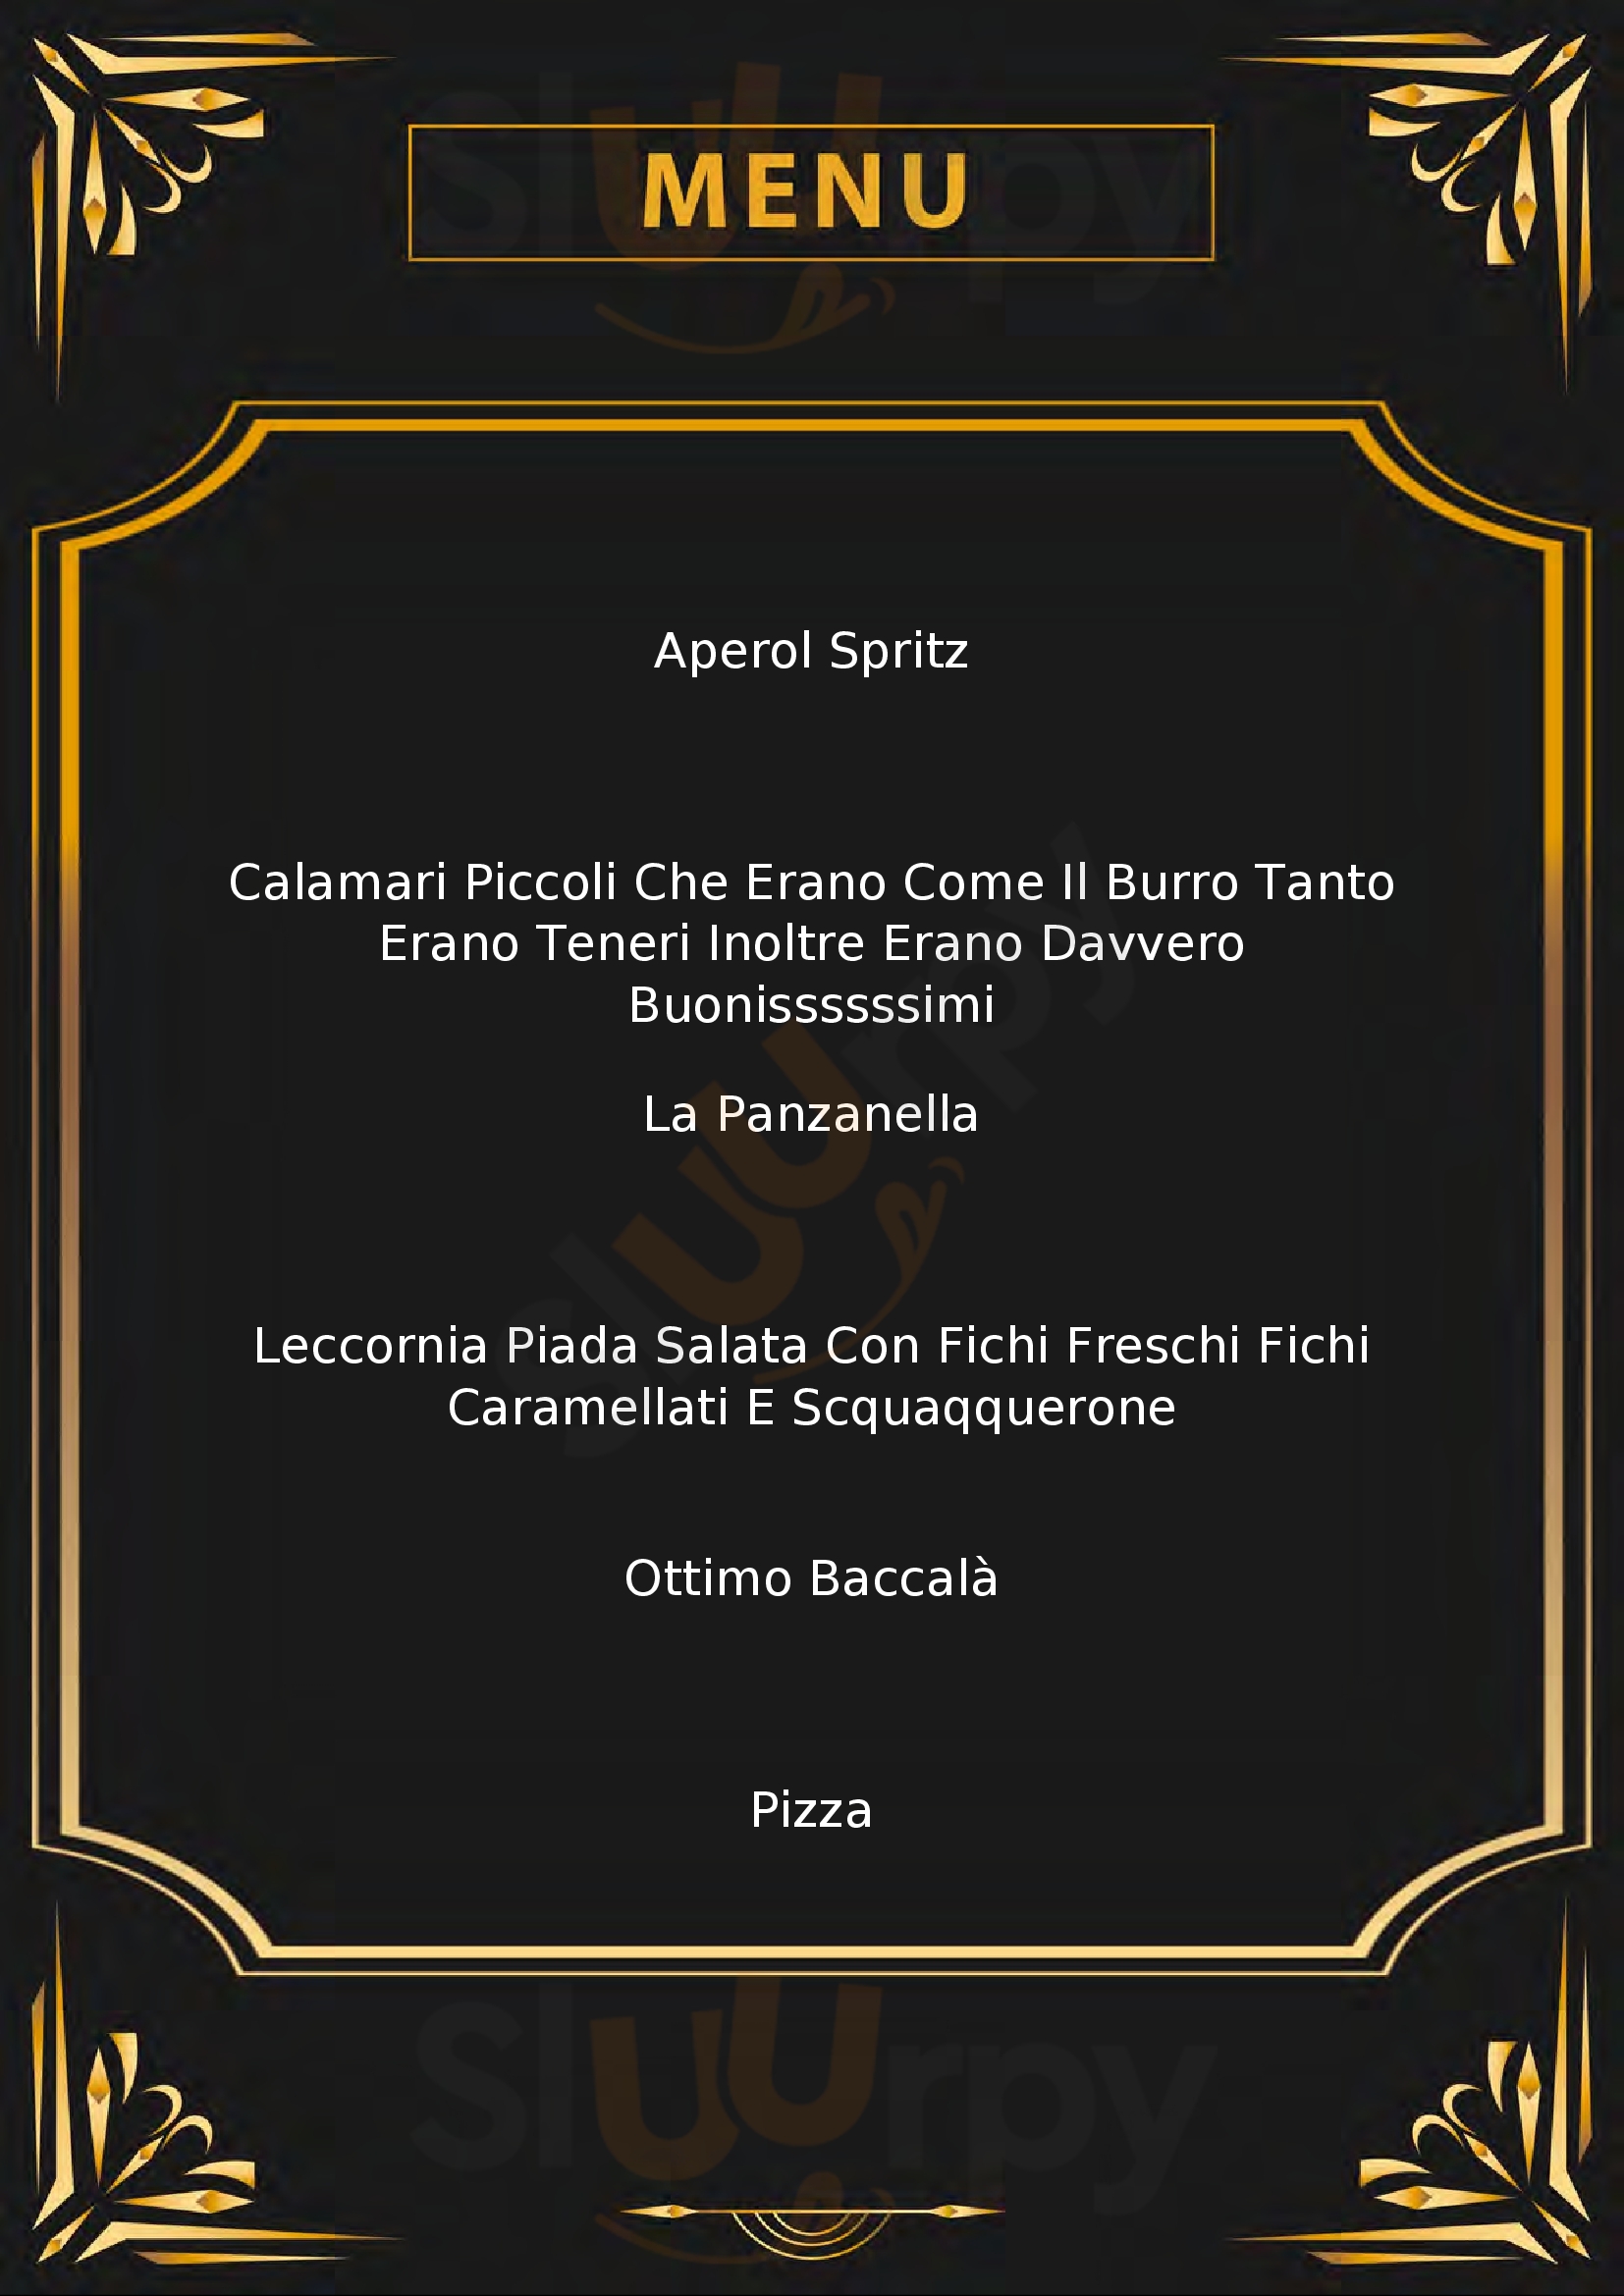 Il Pizzicagnolo Officina Alimentare Rimini menù 1 pagina